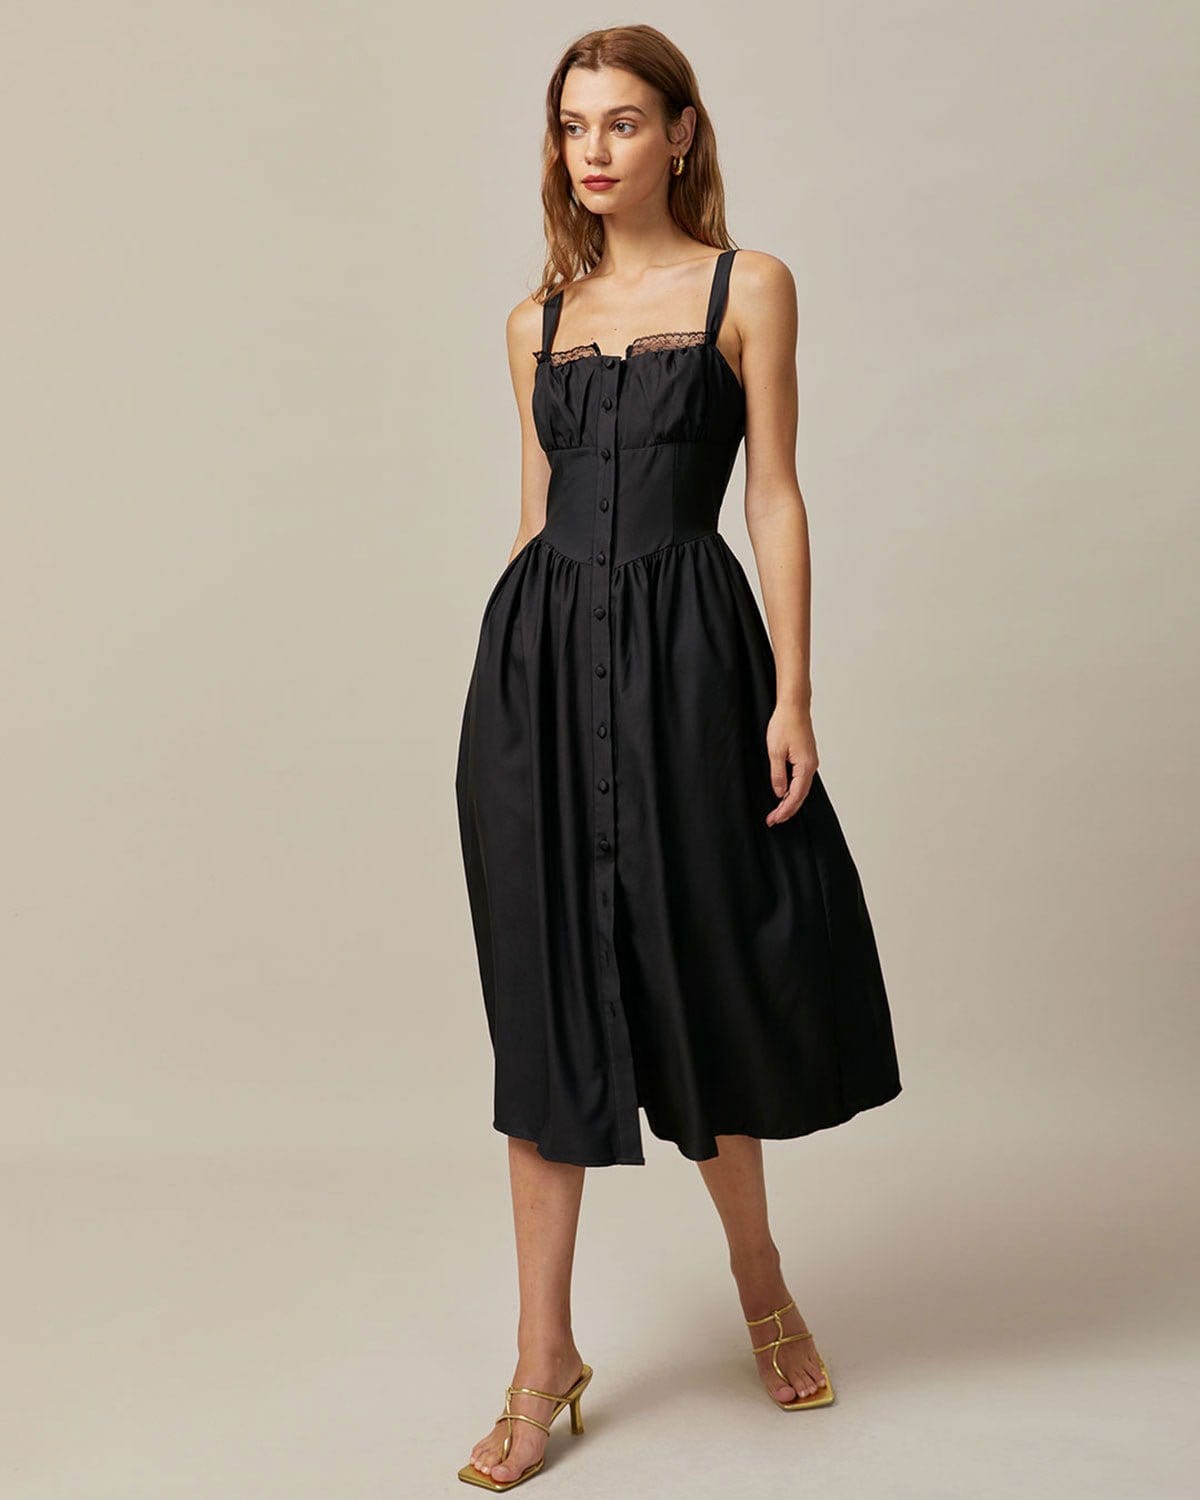 The Black Square Neck Lace Cami Midi Dress